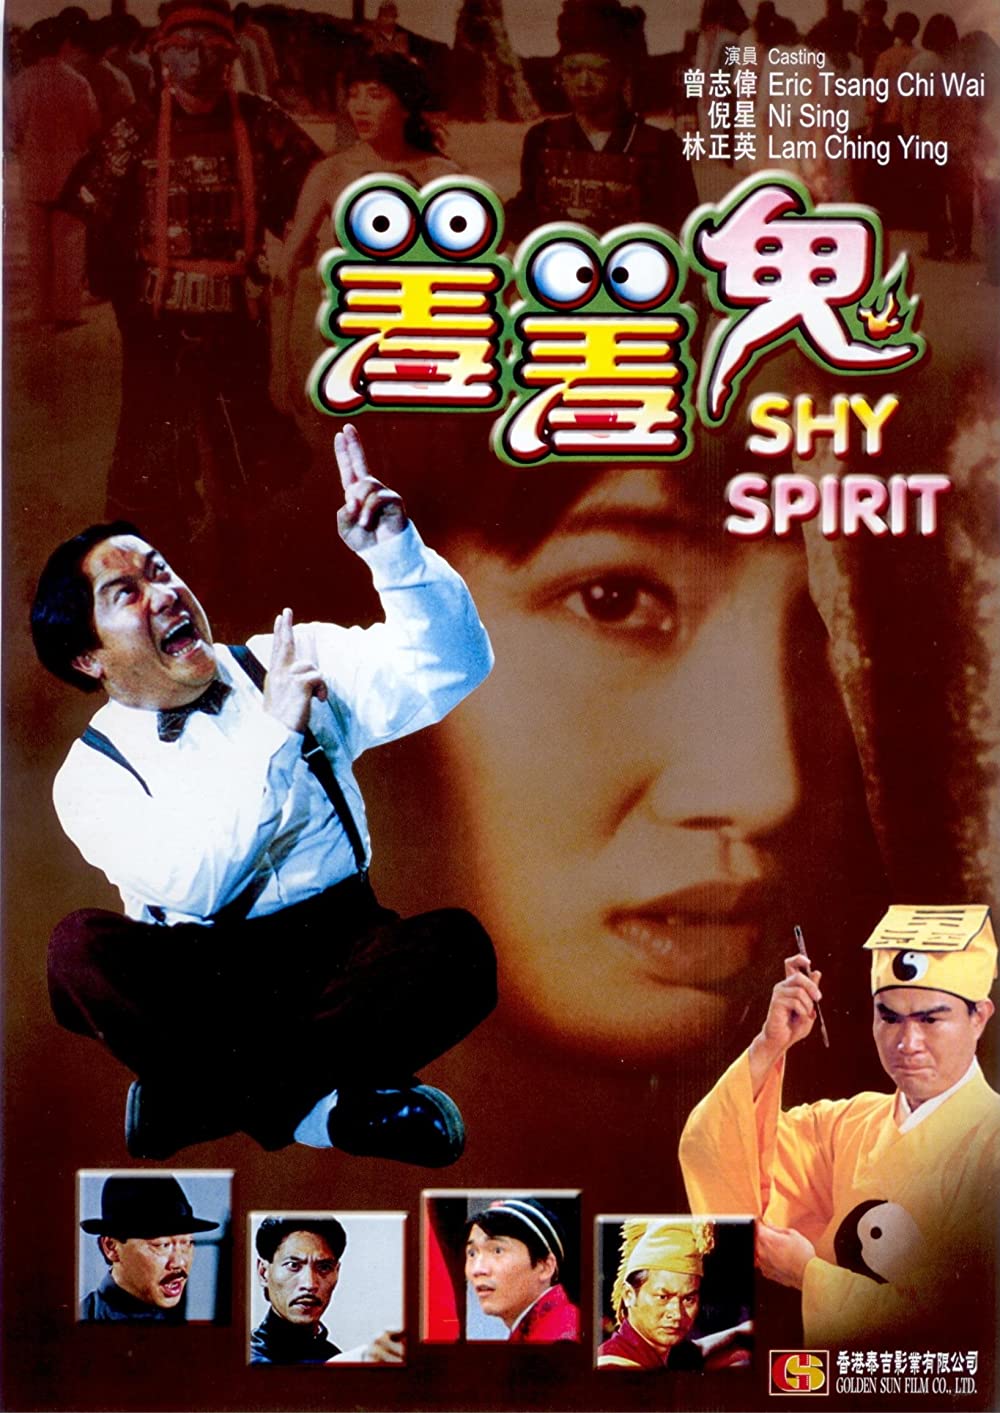 ดูหนัง Shy Spirit (1988) กัดเต็มเหงือก ไม่เลือกที่กัด